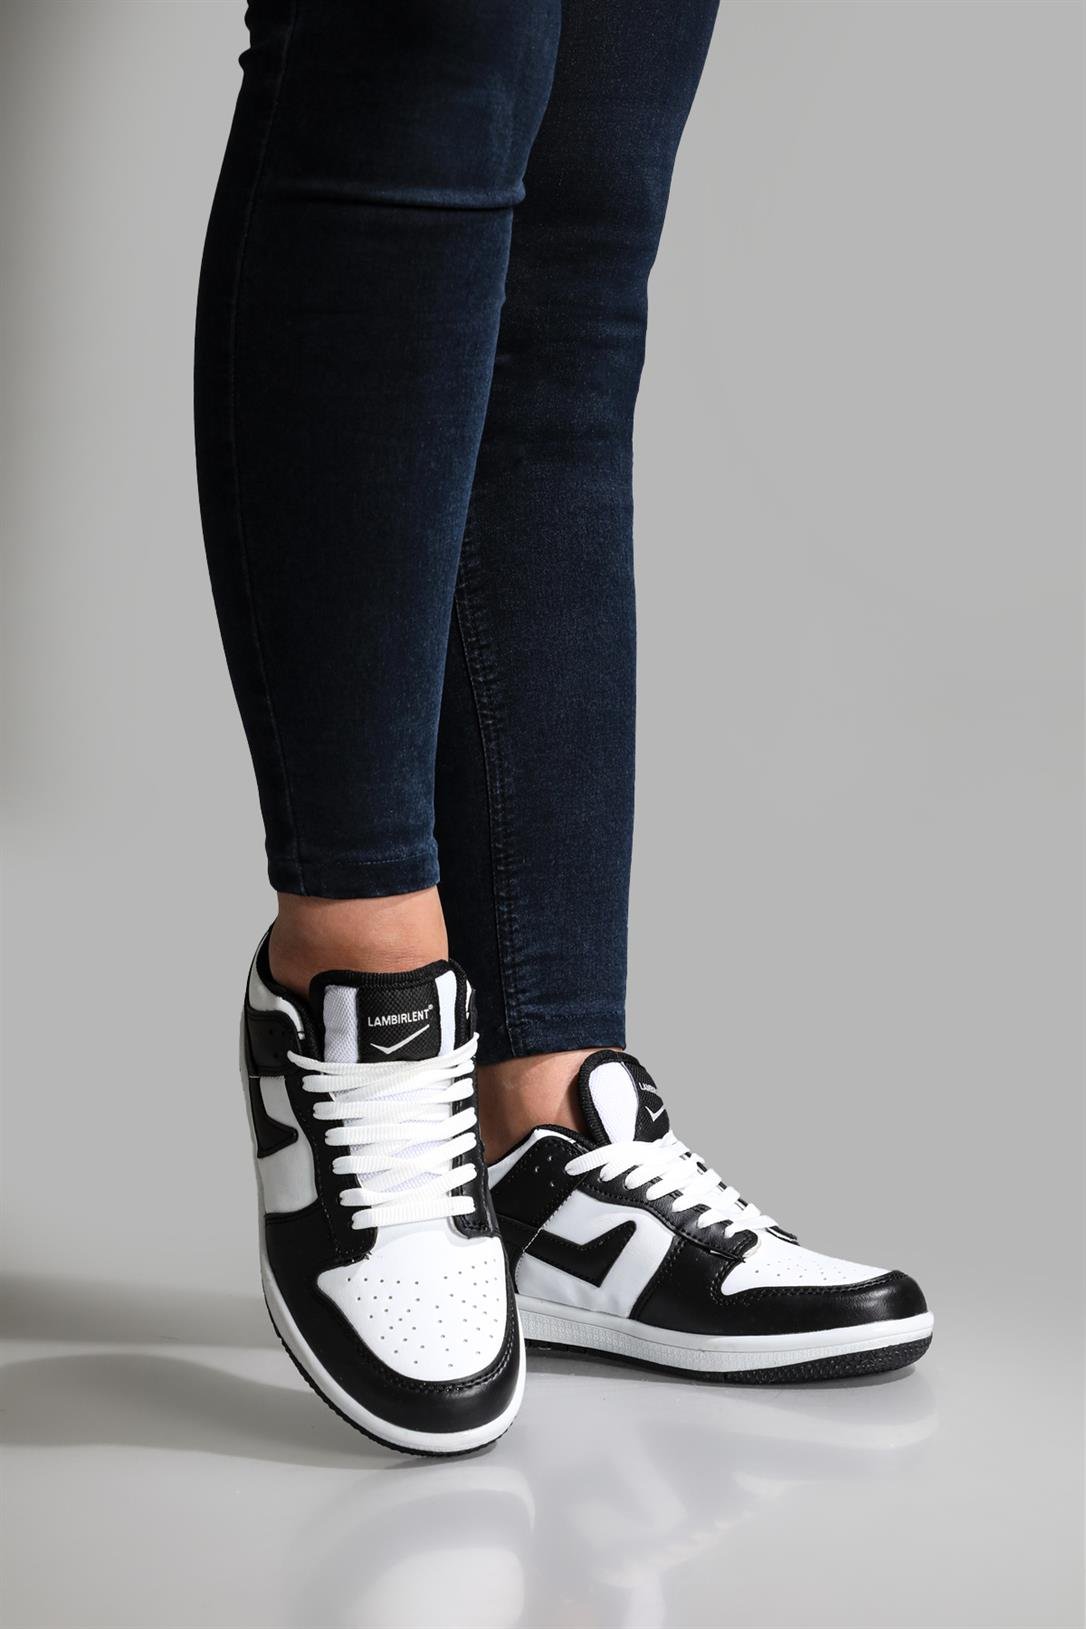 Lambırlent Sneakers Siyah Beyaz Unisex Spor Ayakkabı 8075 | Ayakkabı City